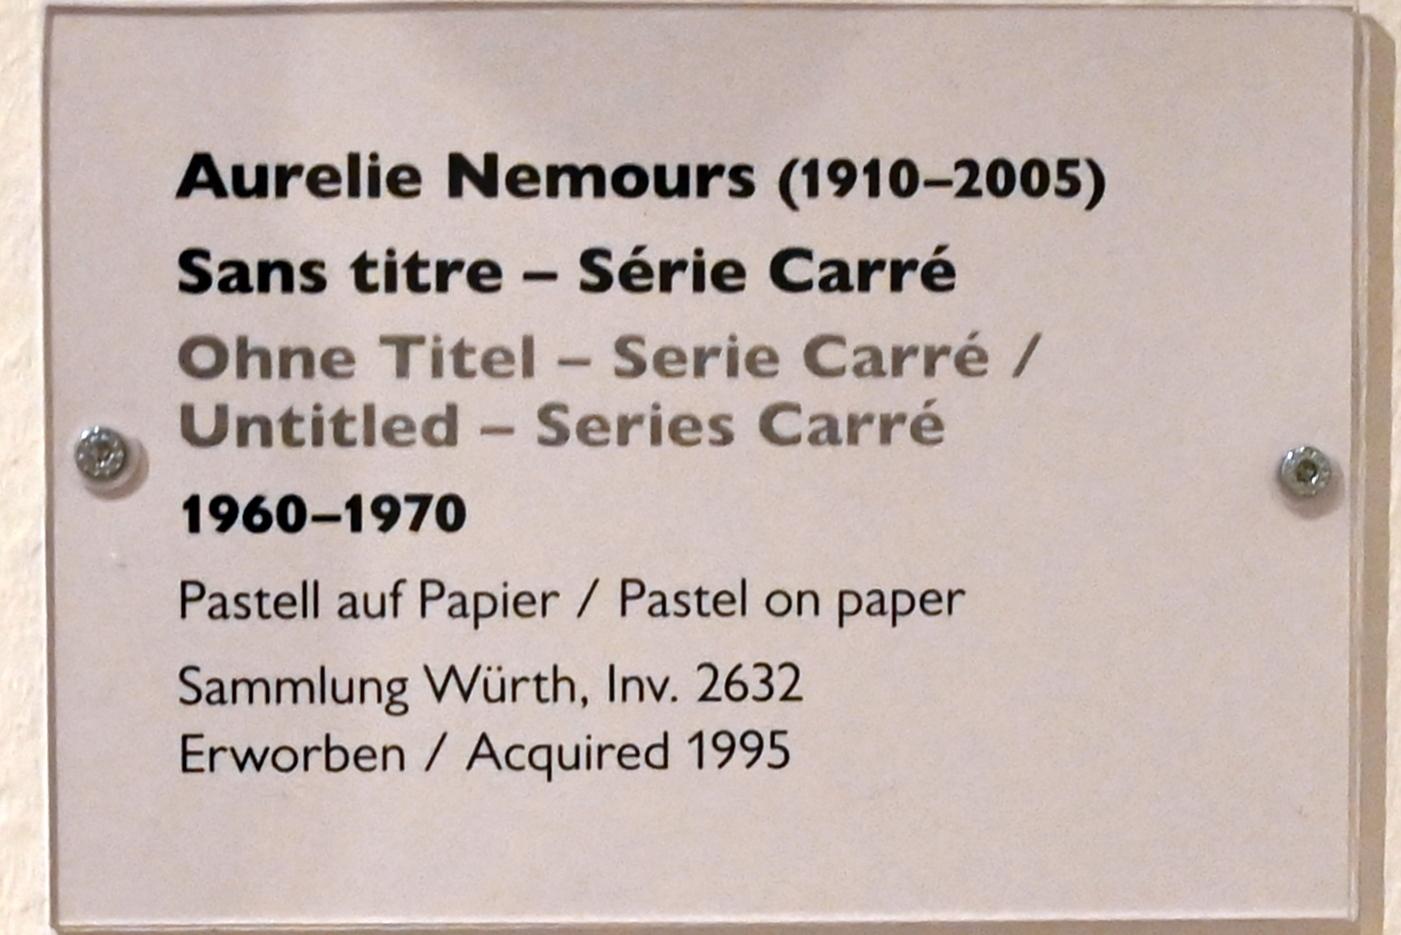 Aurélie Nemours (1954–1965), Ohne Titel - Serie Carré, Schwäbisch Hall, Kunsthalle Würth, Ausstellung "Sport, Spaß und Spiel" vom 13.12.2021 - 26.02.2023, Untergeschoß, 1960–1970, Bild 2/2